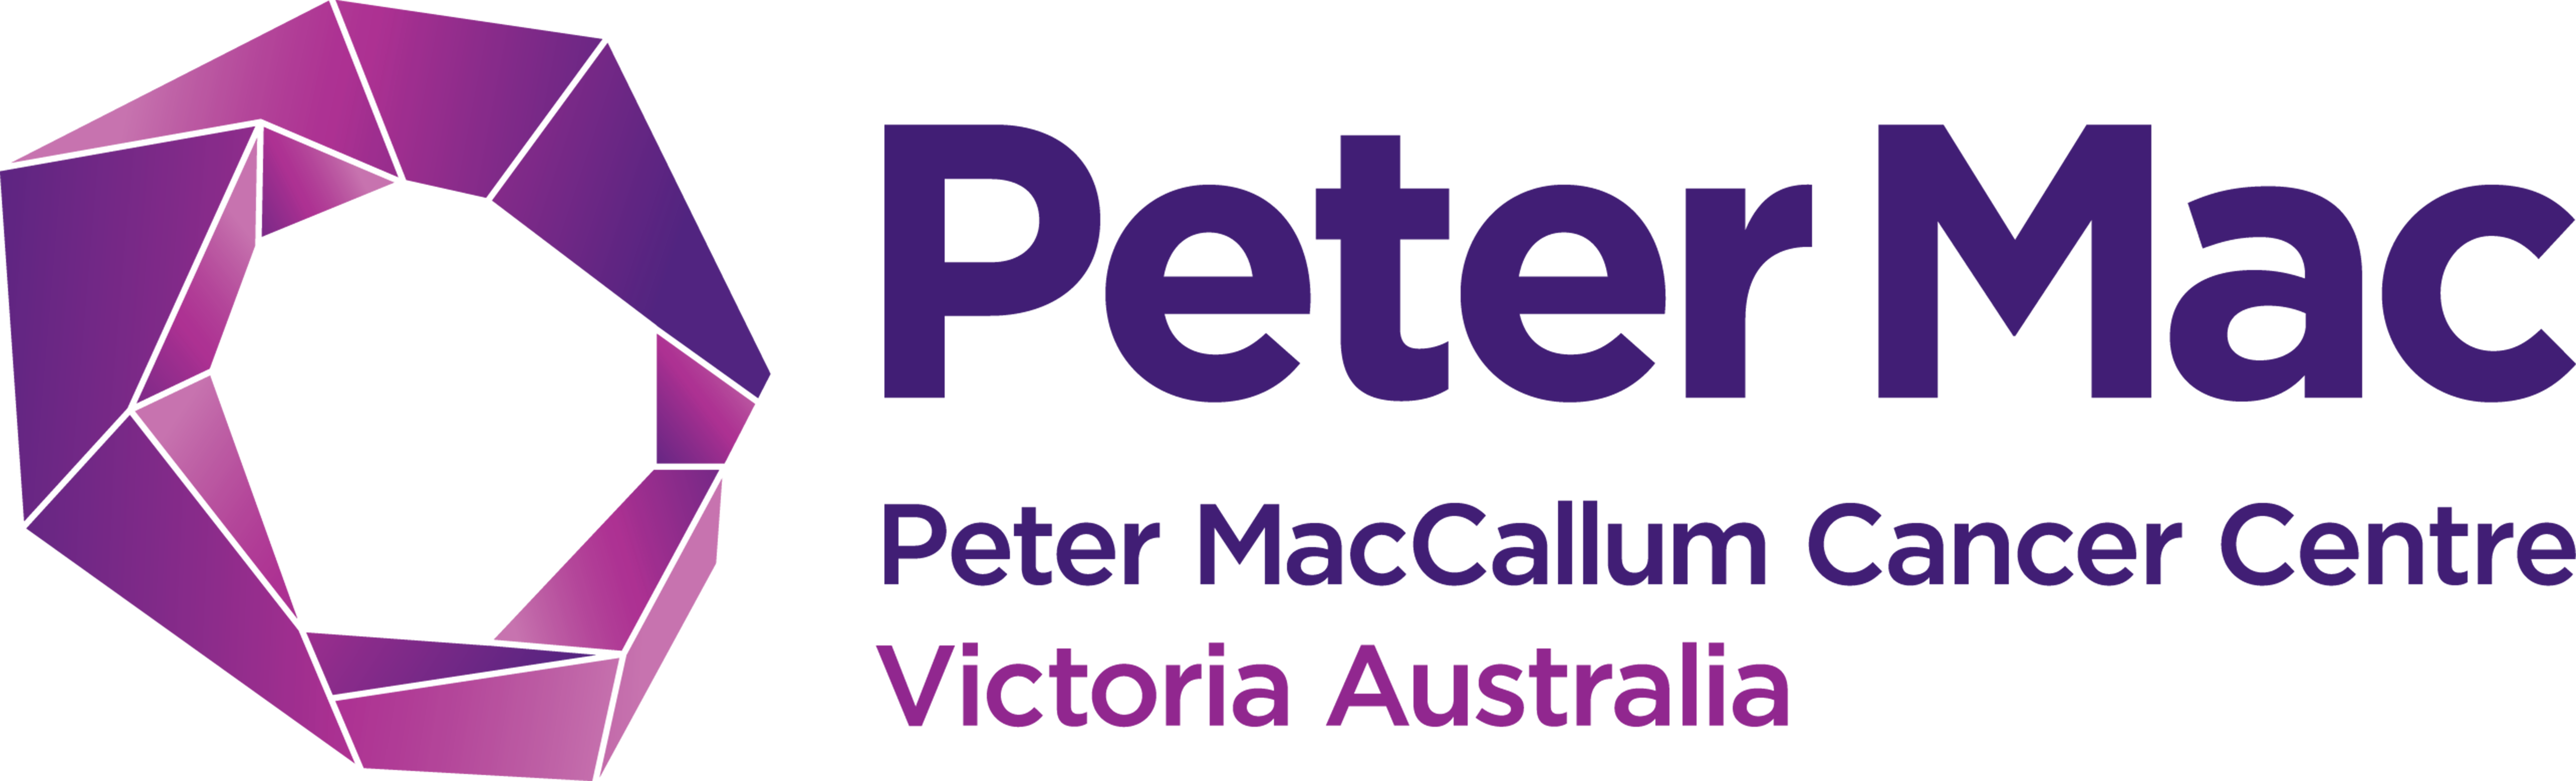 PMCC logo